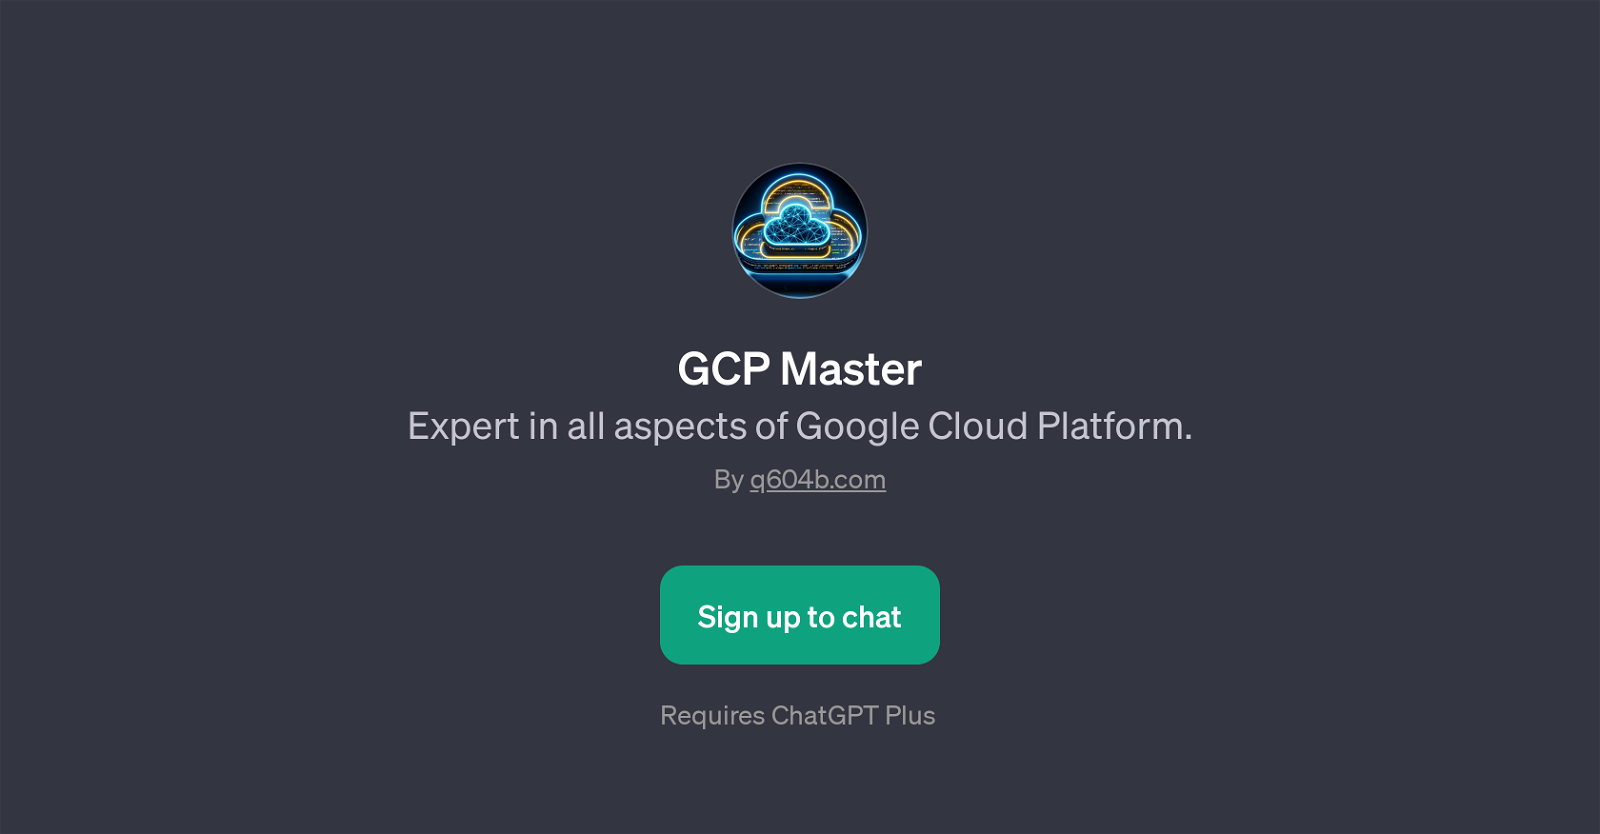 GCP Master website